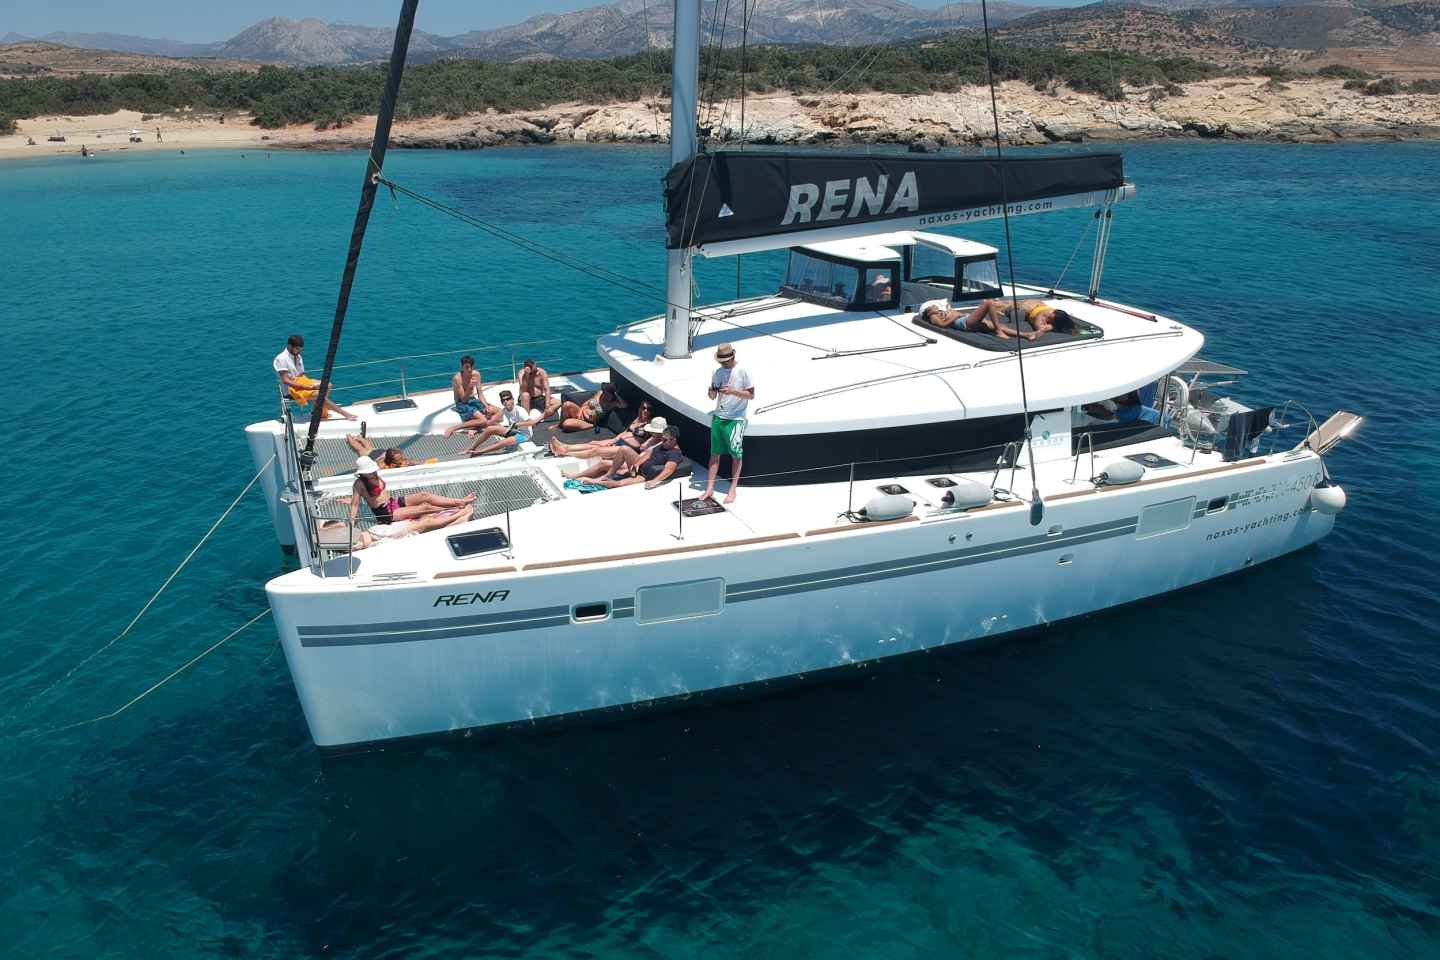 Fra Naxos: Krydstogt med alt inklusive på en luksuriøs katamaran